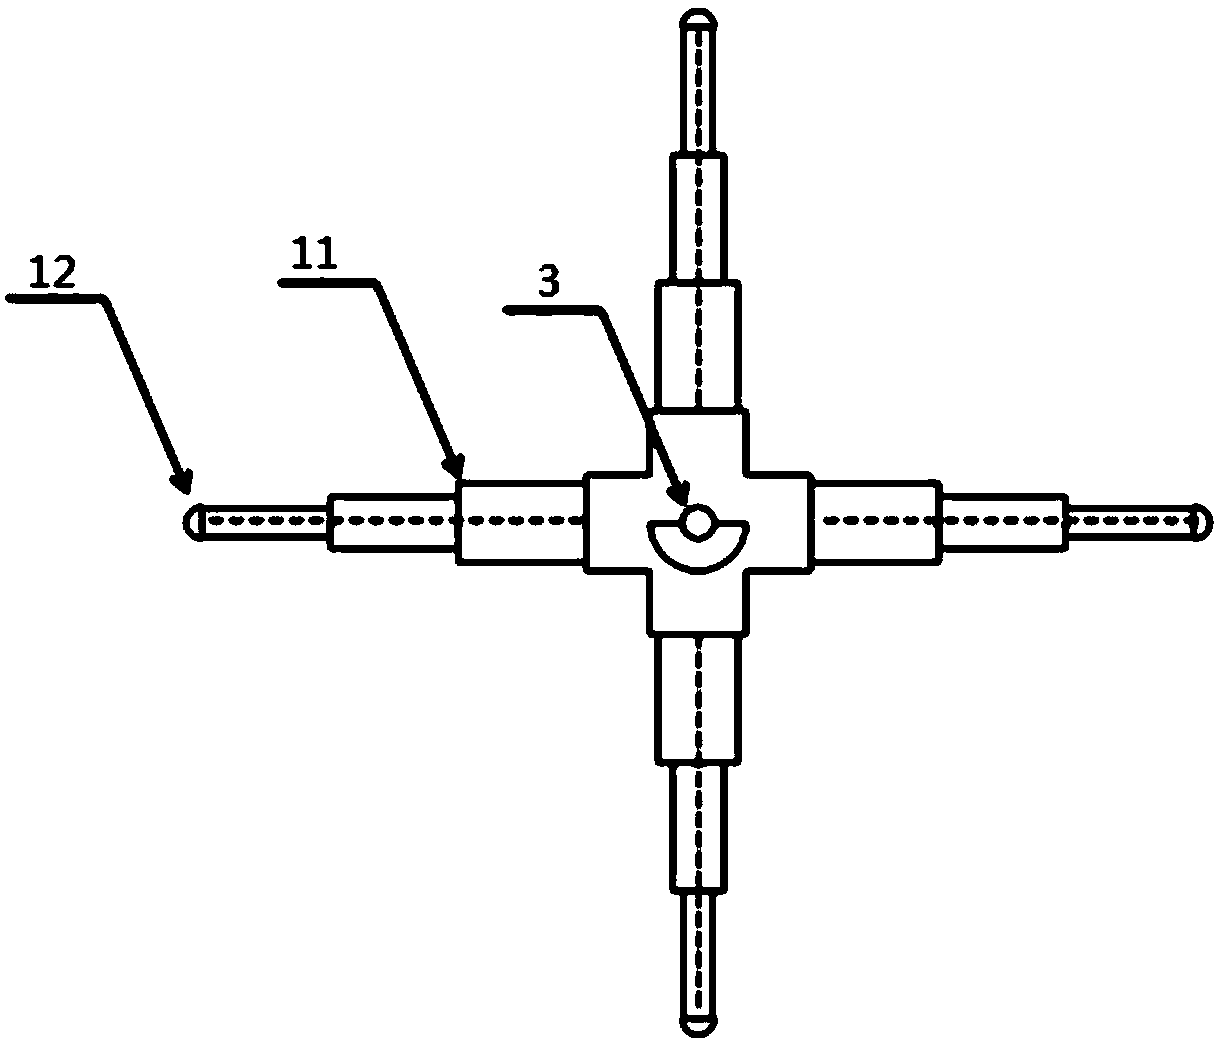 Test piece fixture for Helmholtz coil testing